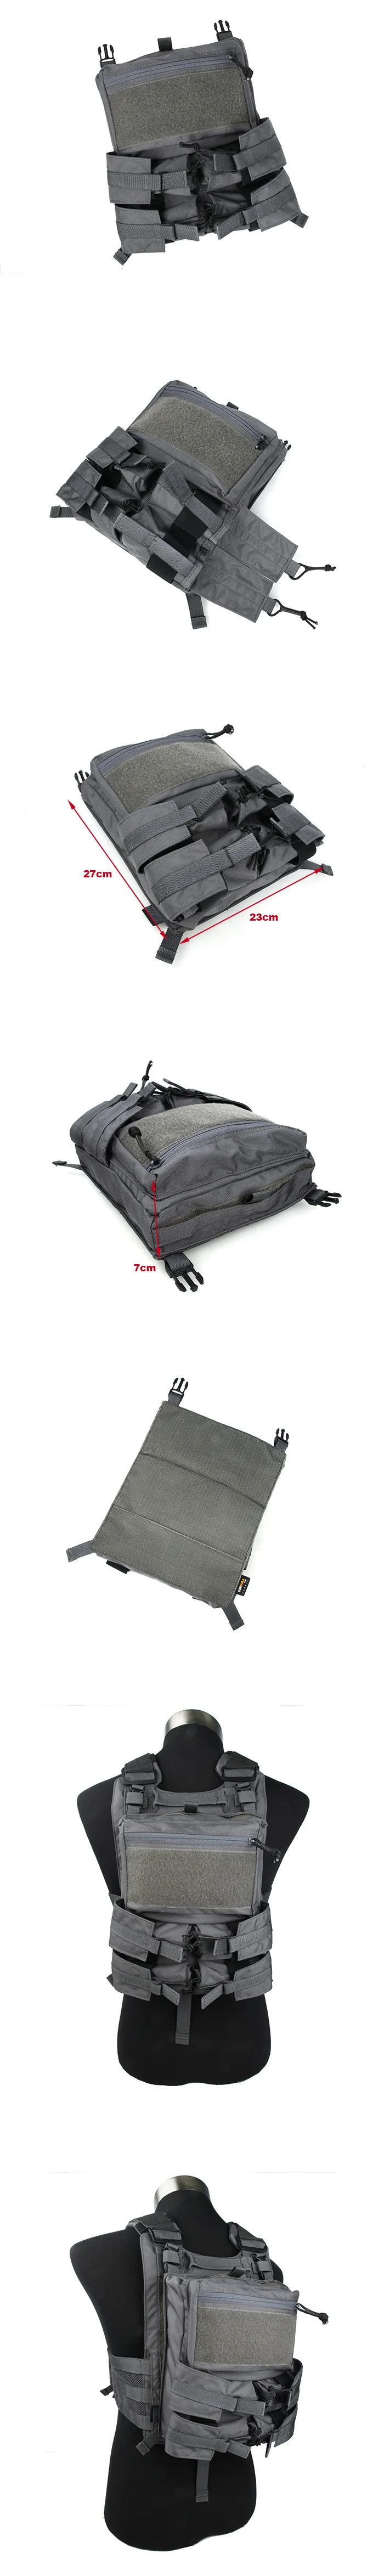 TMC 2743 4020 Специальное соединение рюкзак небольшой мешок воды аутсорсинг 500D ткань Кордура